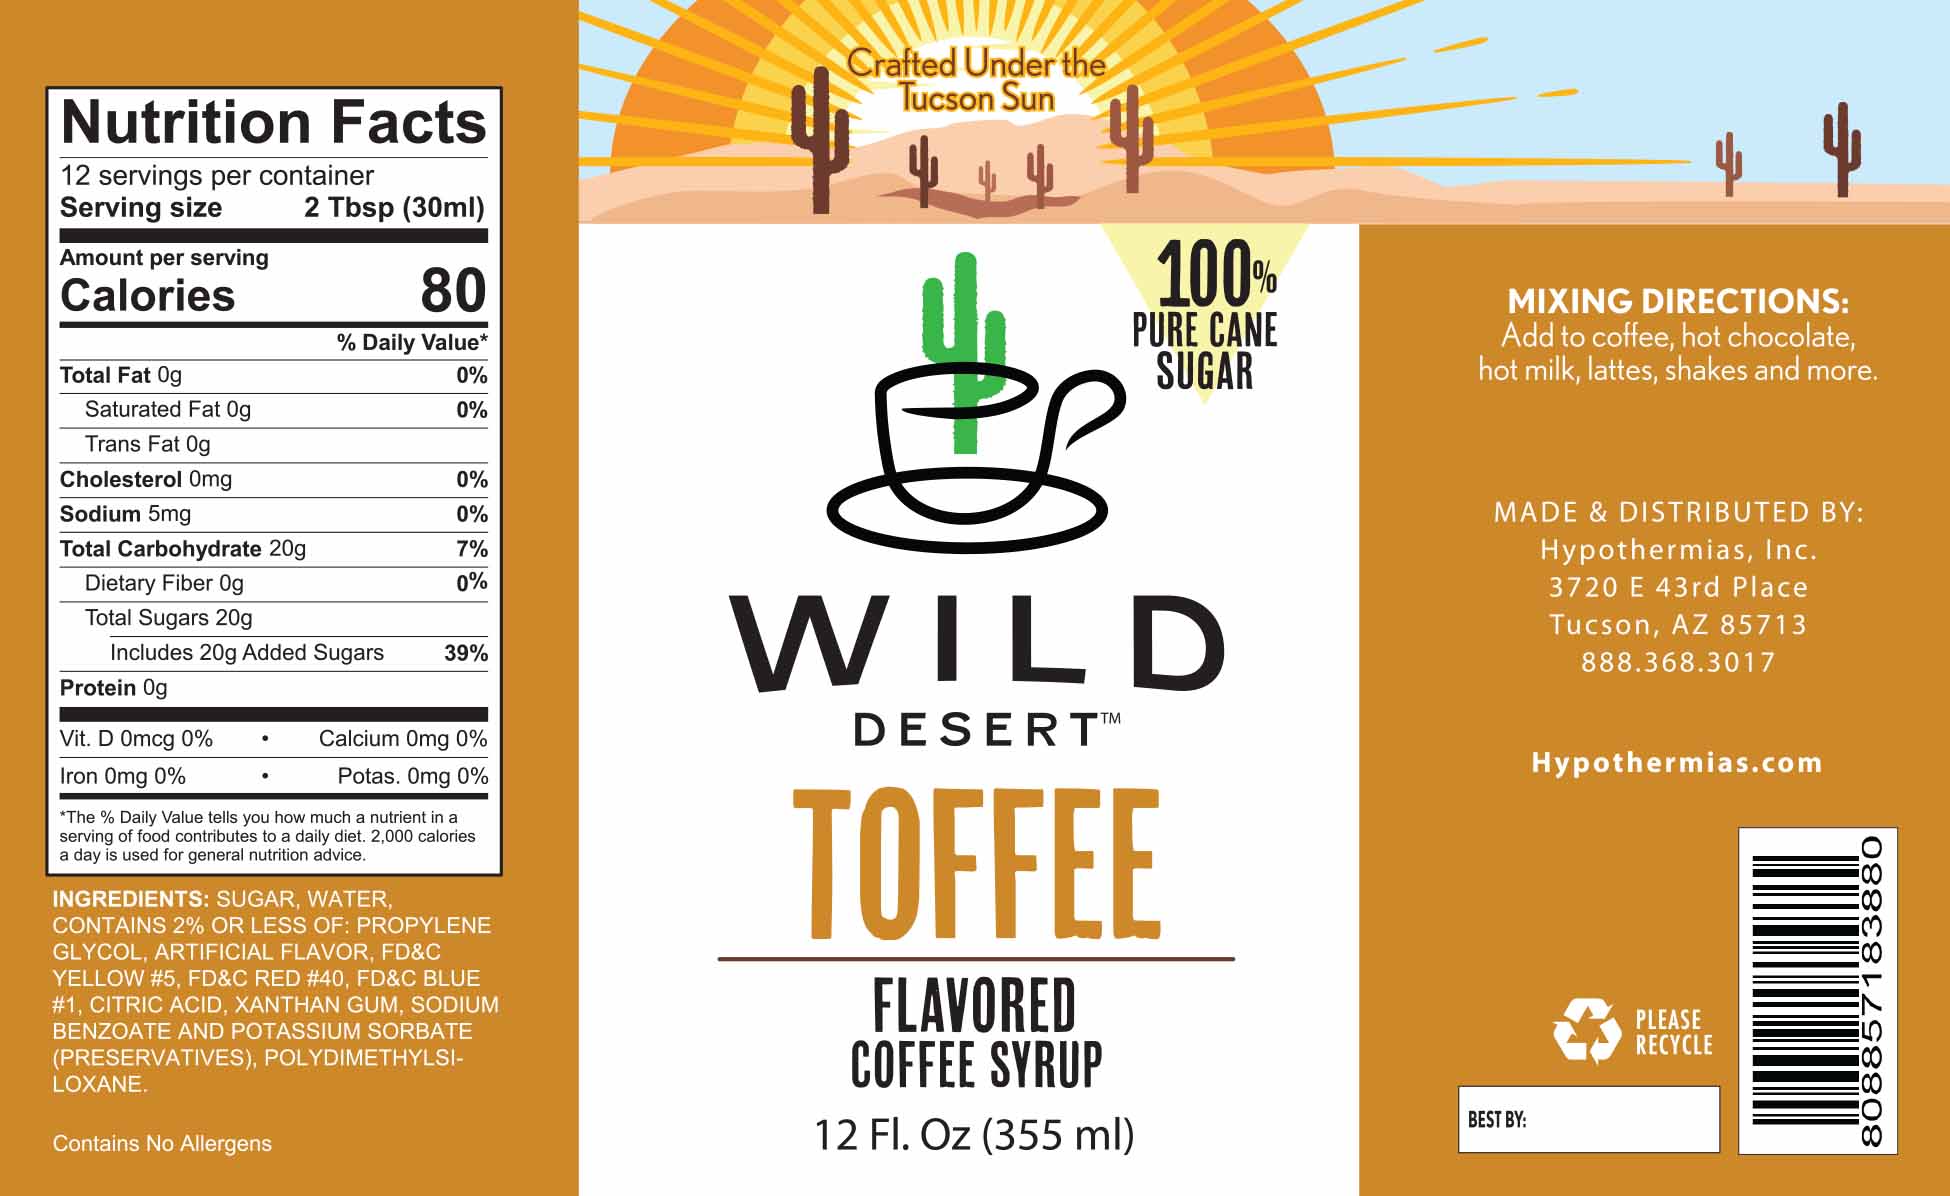 Toffee Coffee Syrup - Hypothermias.com